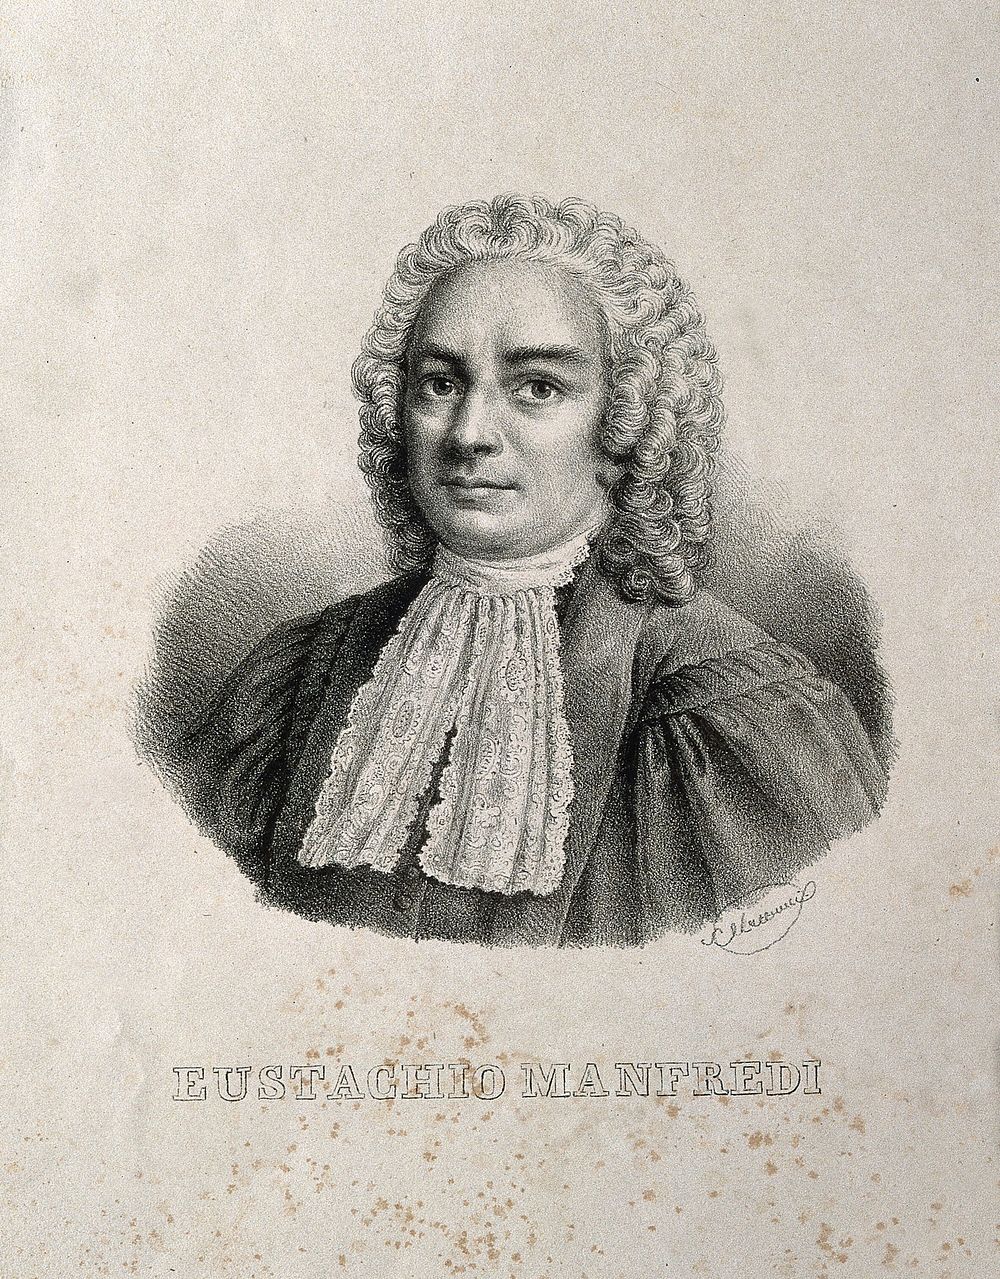 Eustachio Manfredi. Lithograph by C. Luccarini.